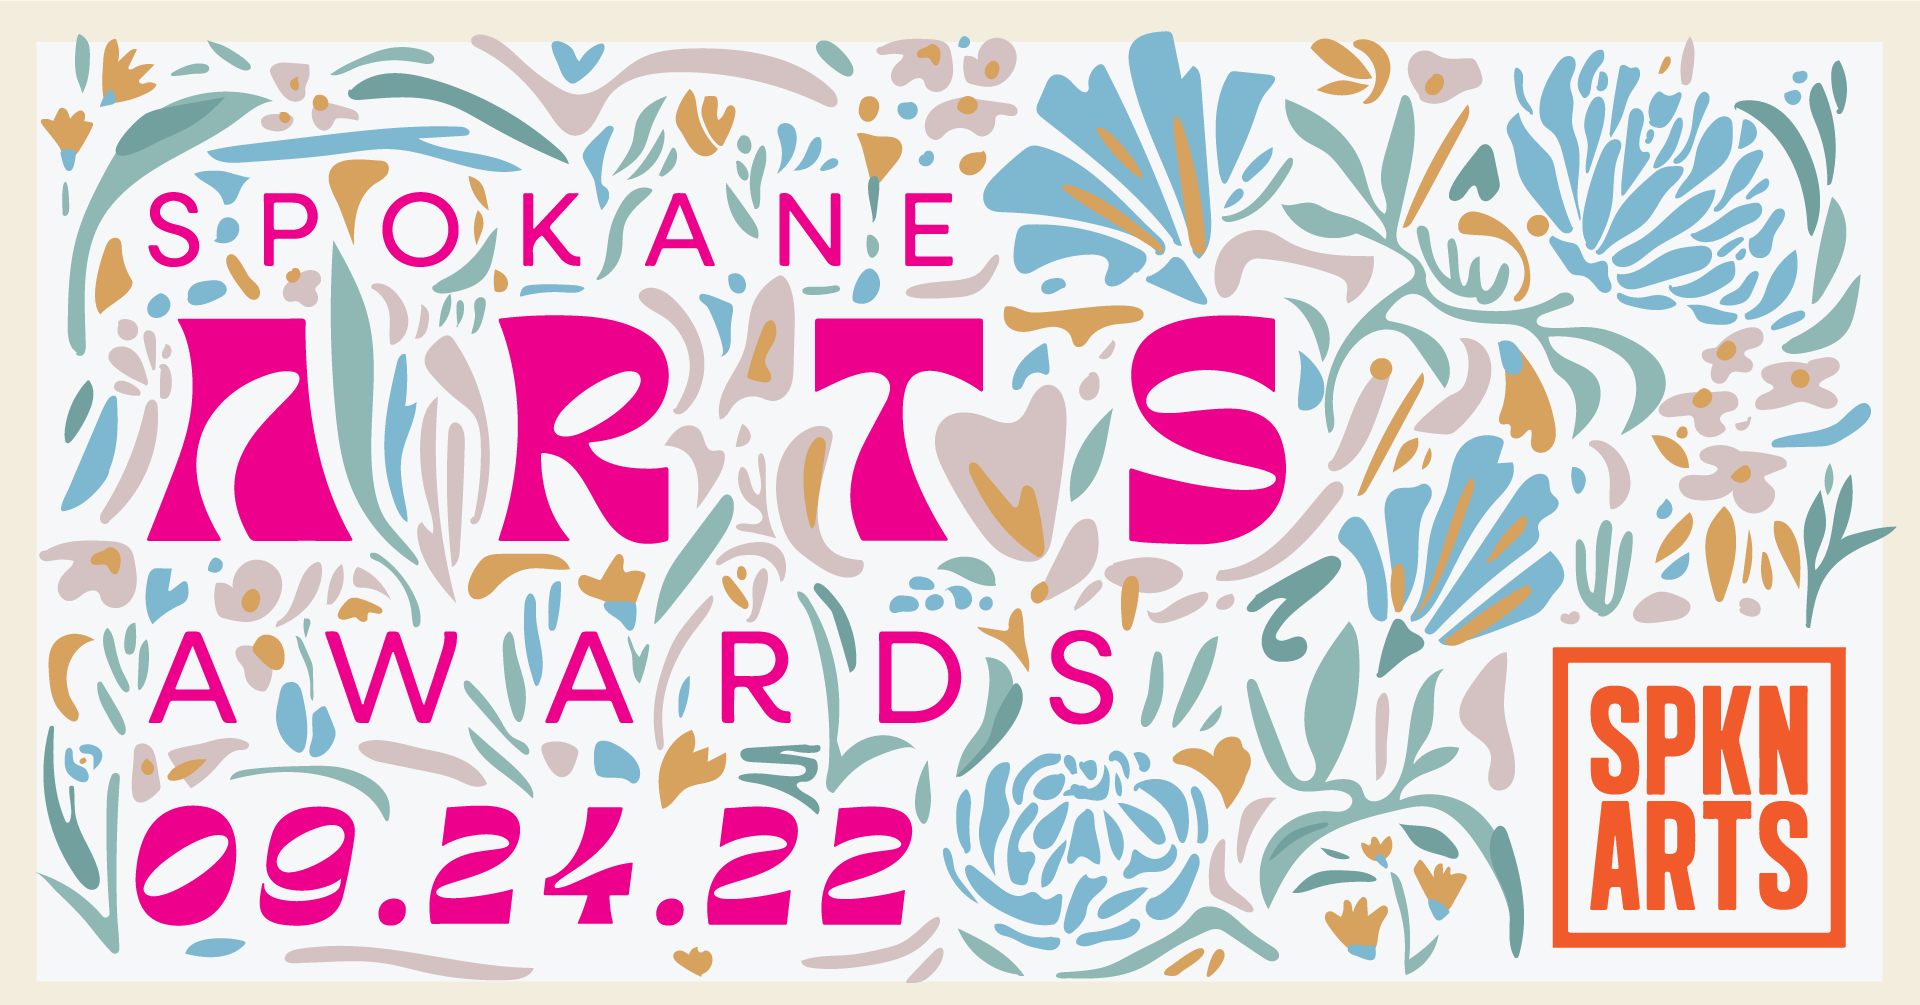 2022 Spokane Arts Award Winners! Spokane Arts